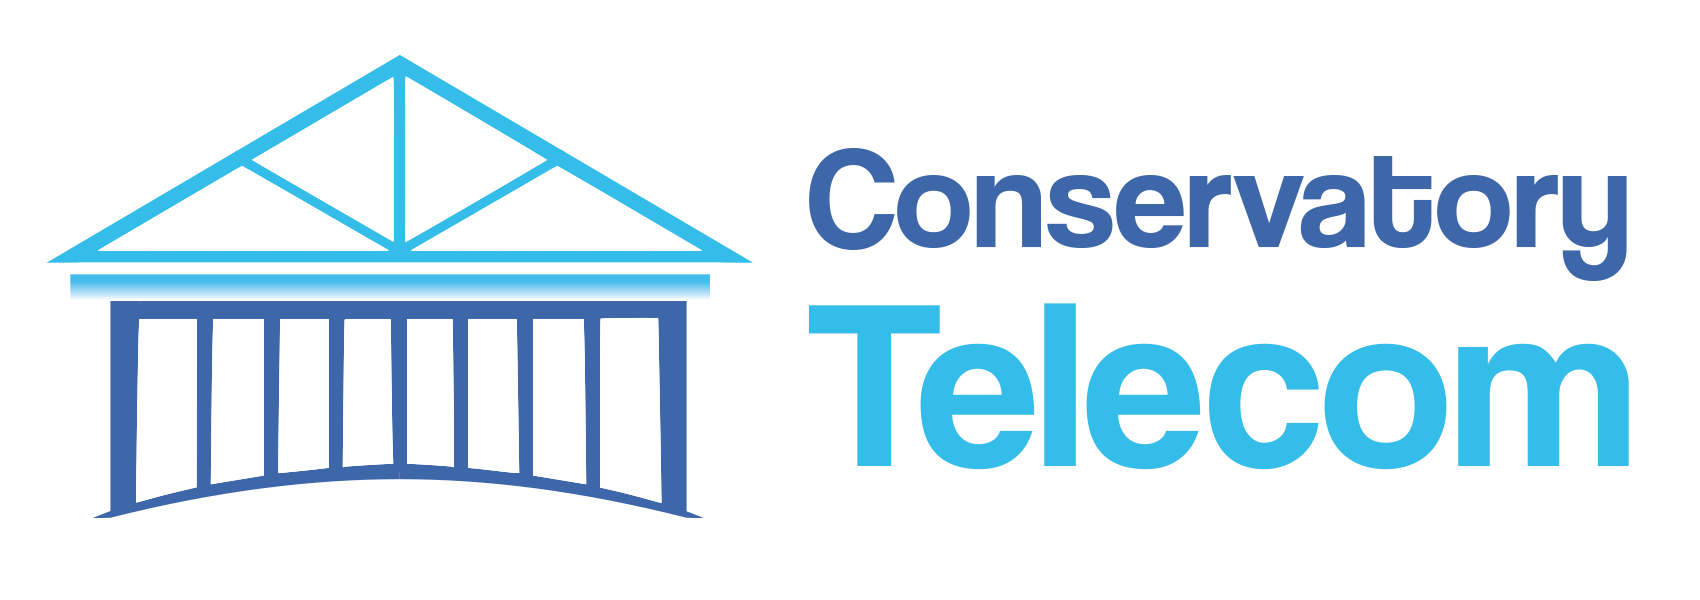 Conservatory Telecom